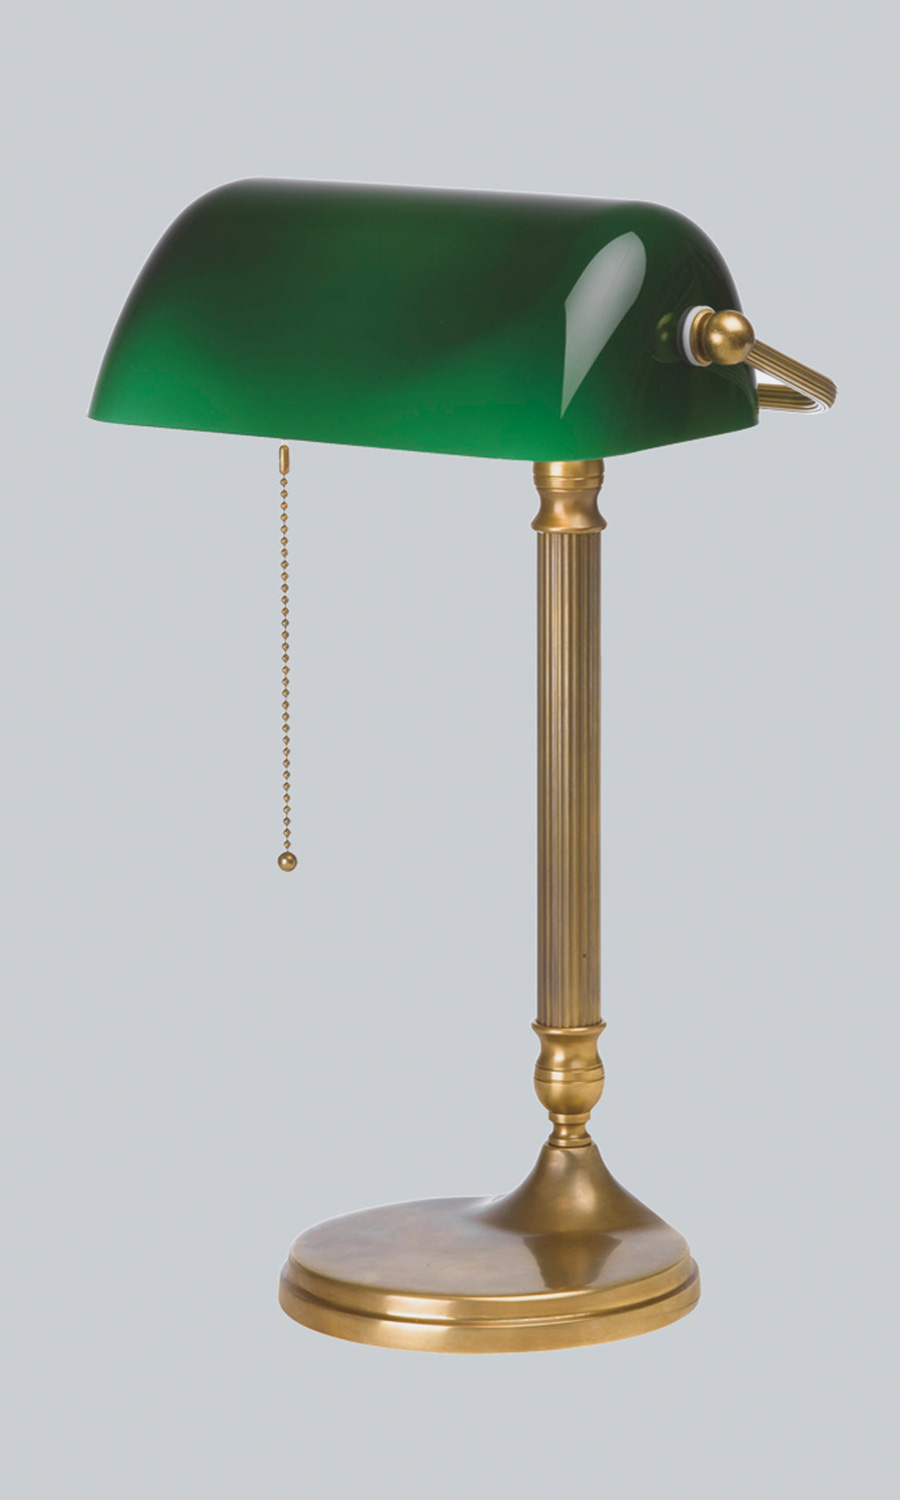 Lampe Banker Lampe englische Tischlampe Bürolampe Tischleuchte Leseleuchte grün 